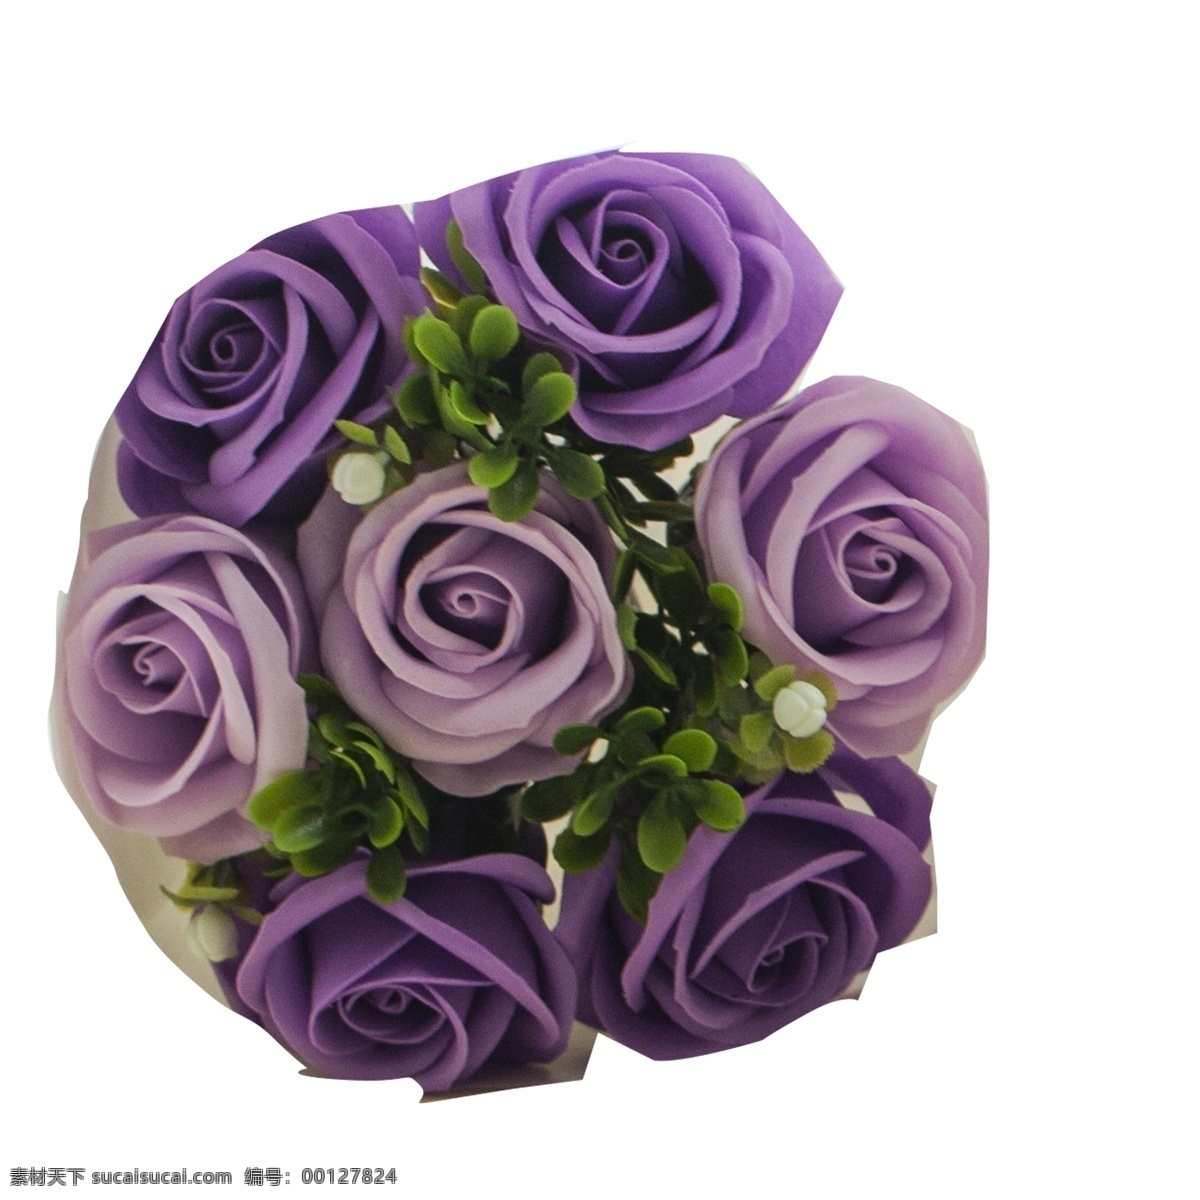 紫色 花朵 免 抠 图 紫色花朵 时尚花朵 时尚礼盒 漂亮的花朵 情人节 礼物 时尚花艺 红色的花朵 免抠图